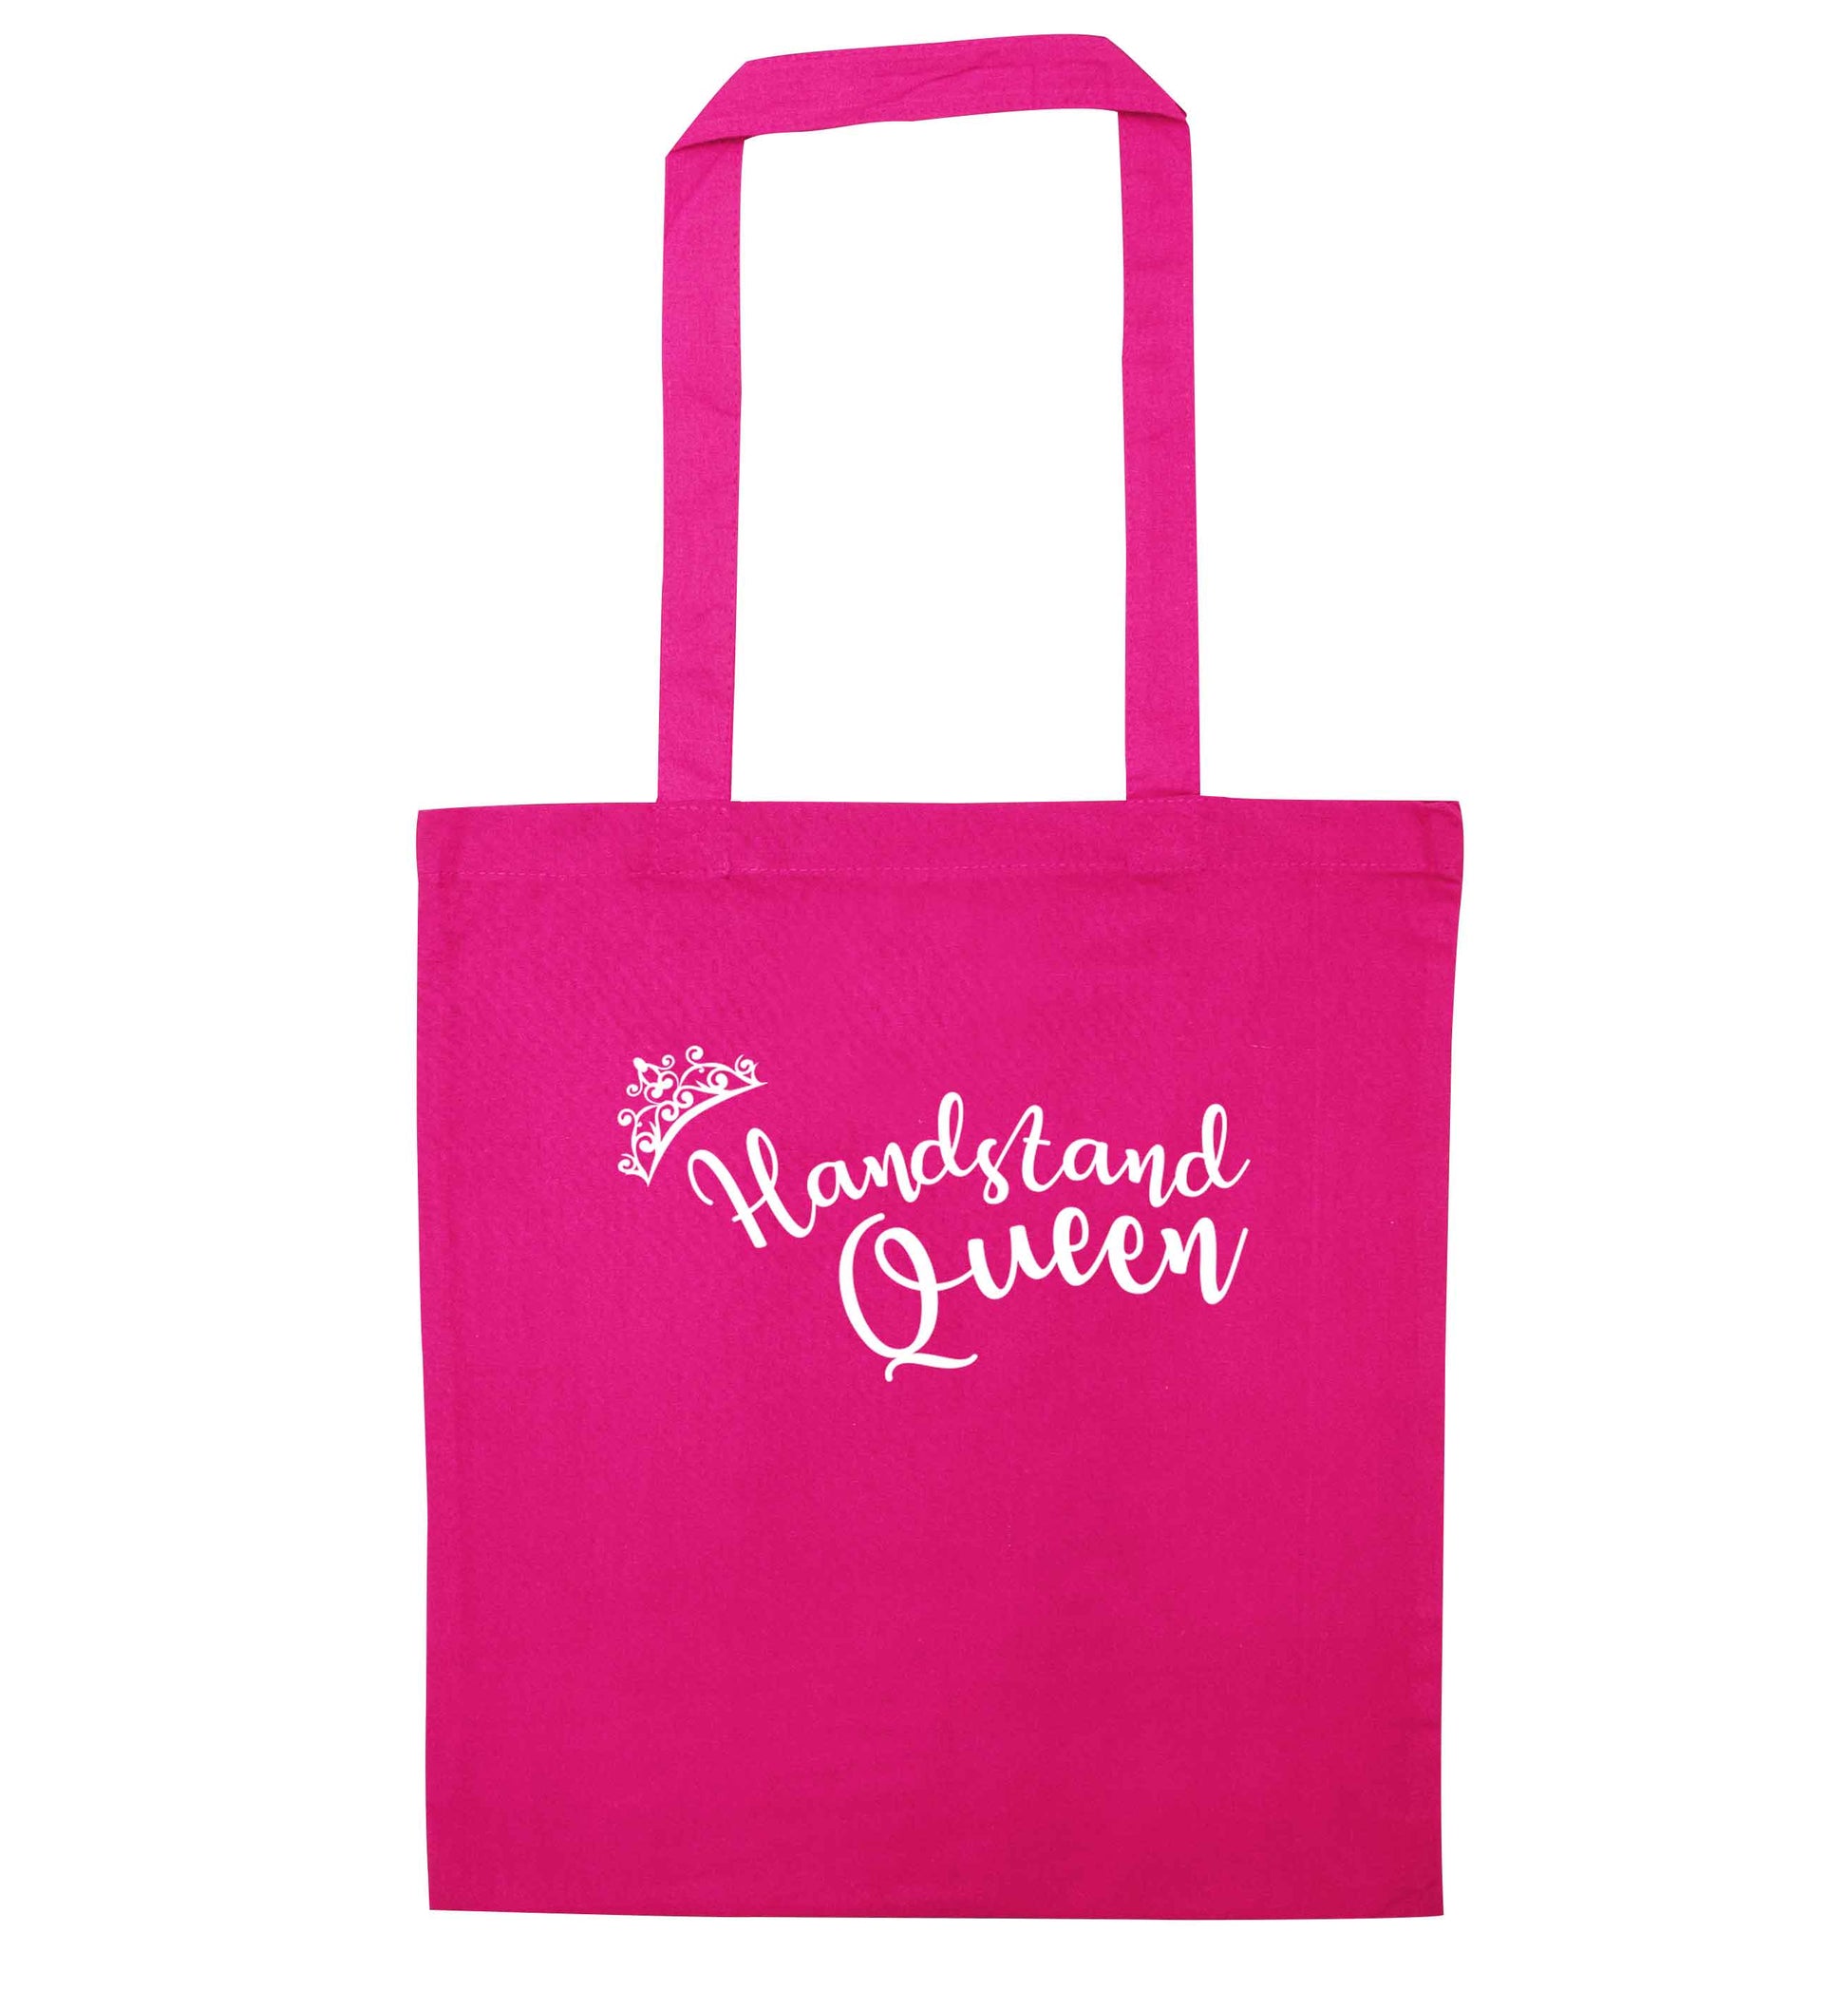 Handstand Queen pink tote bag